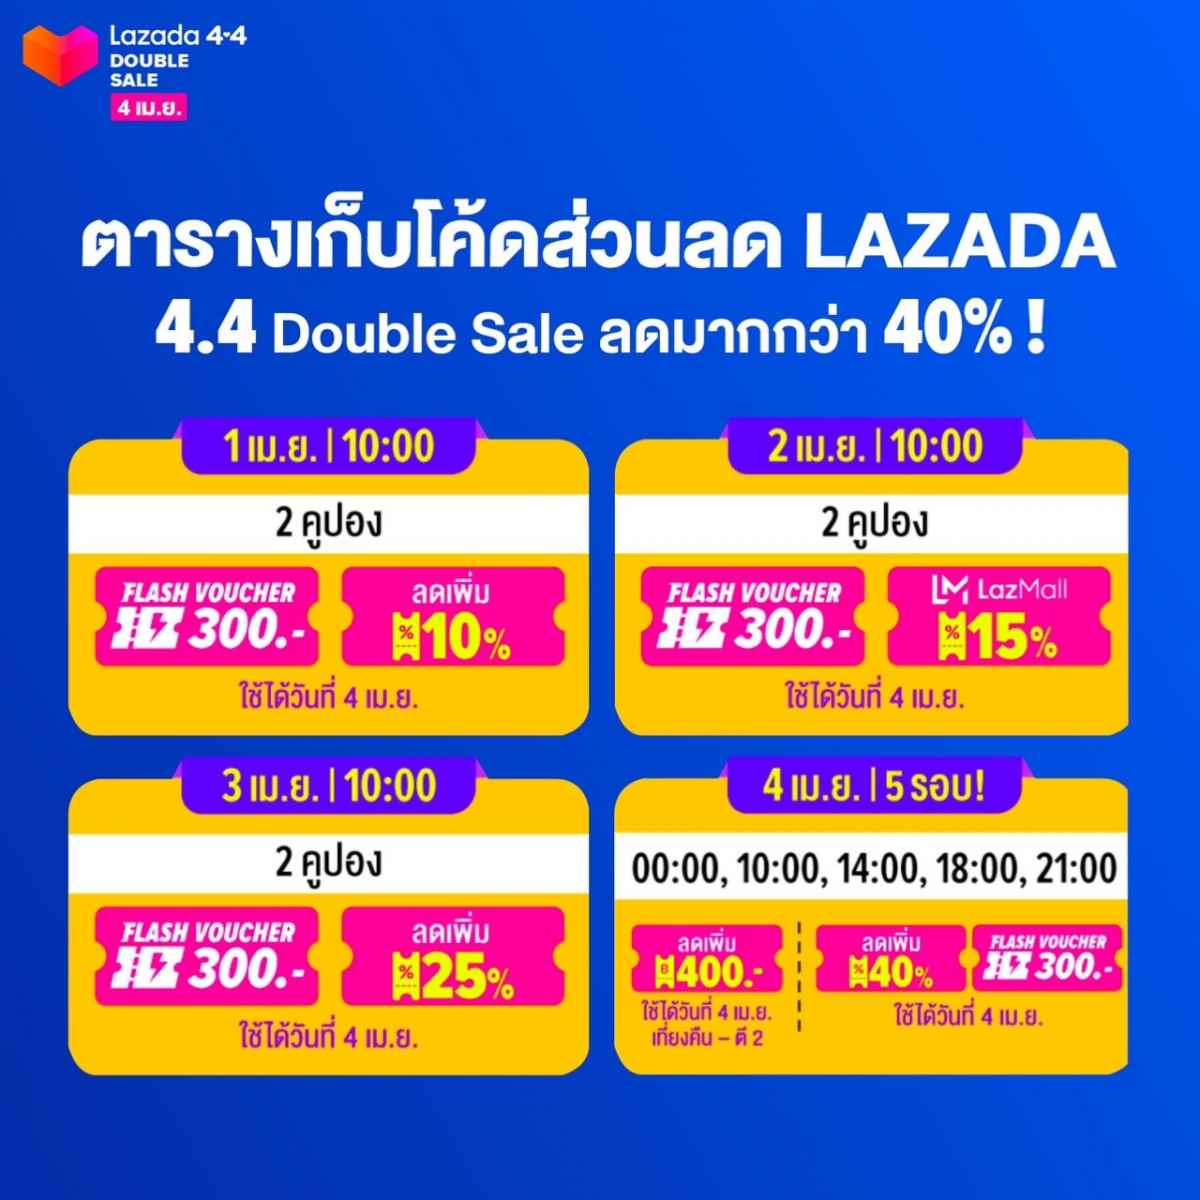 Lazada 4.4 Double Sale